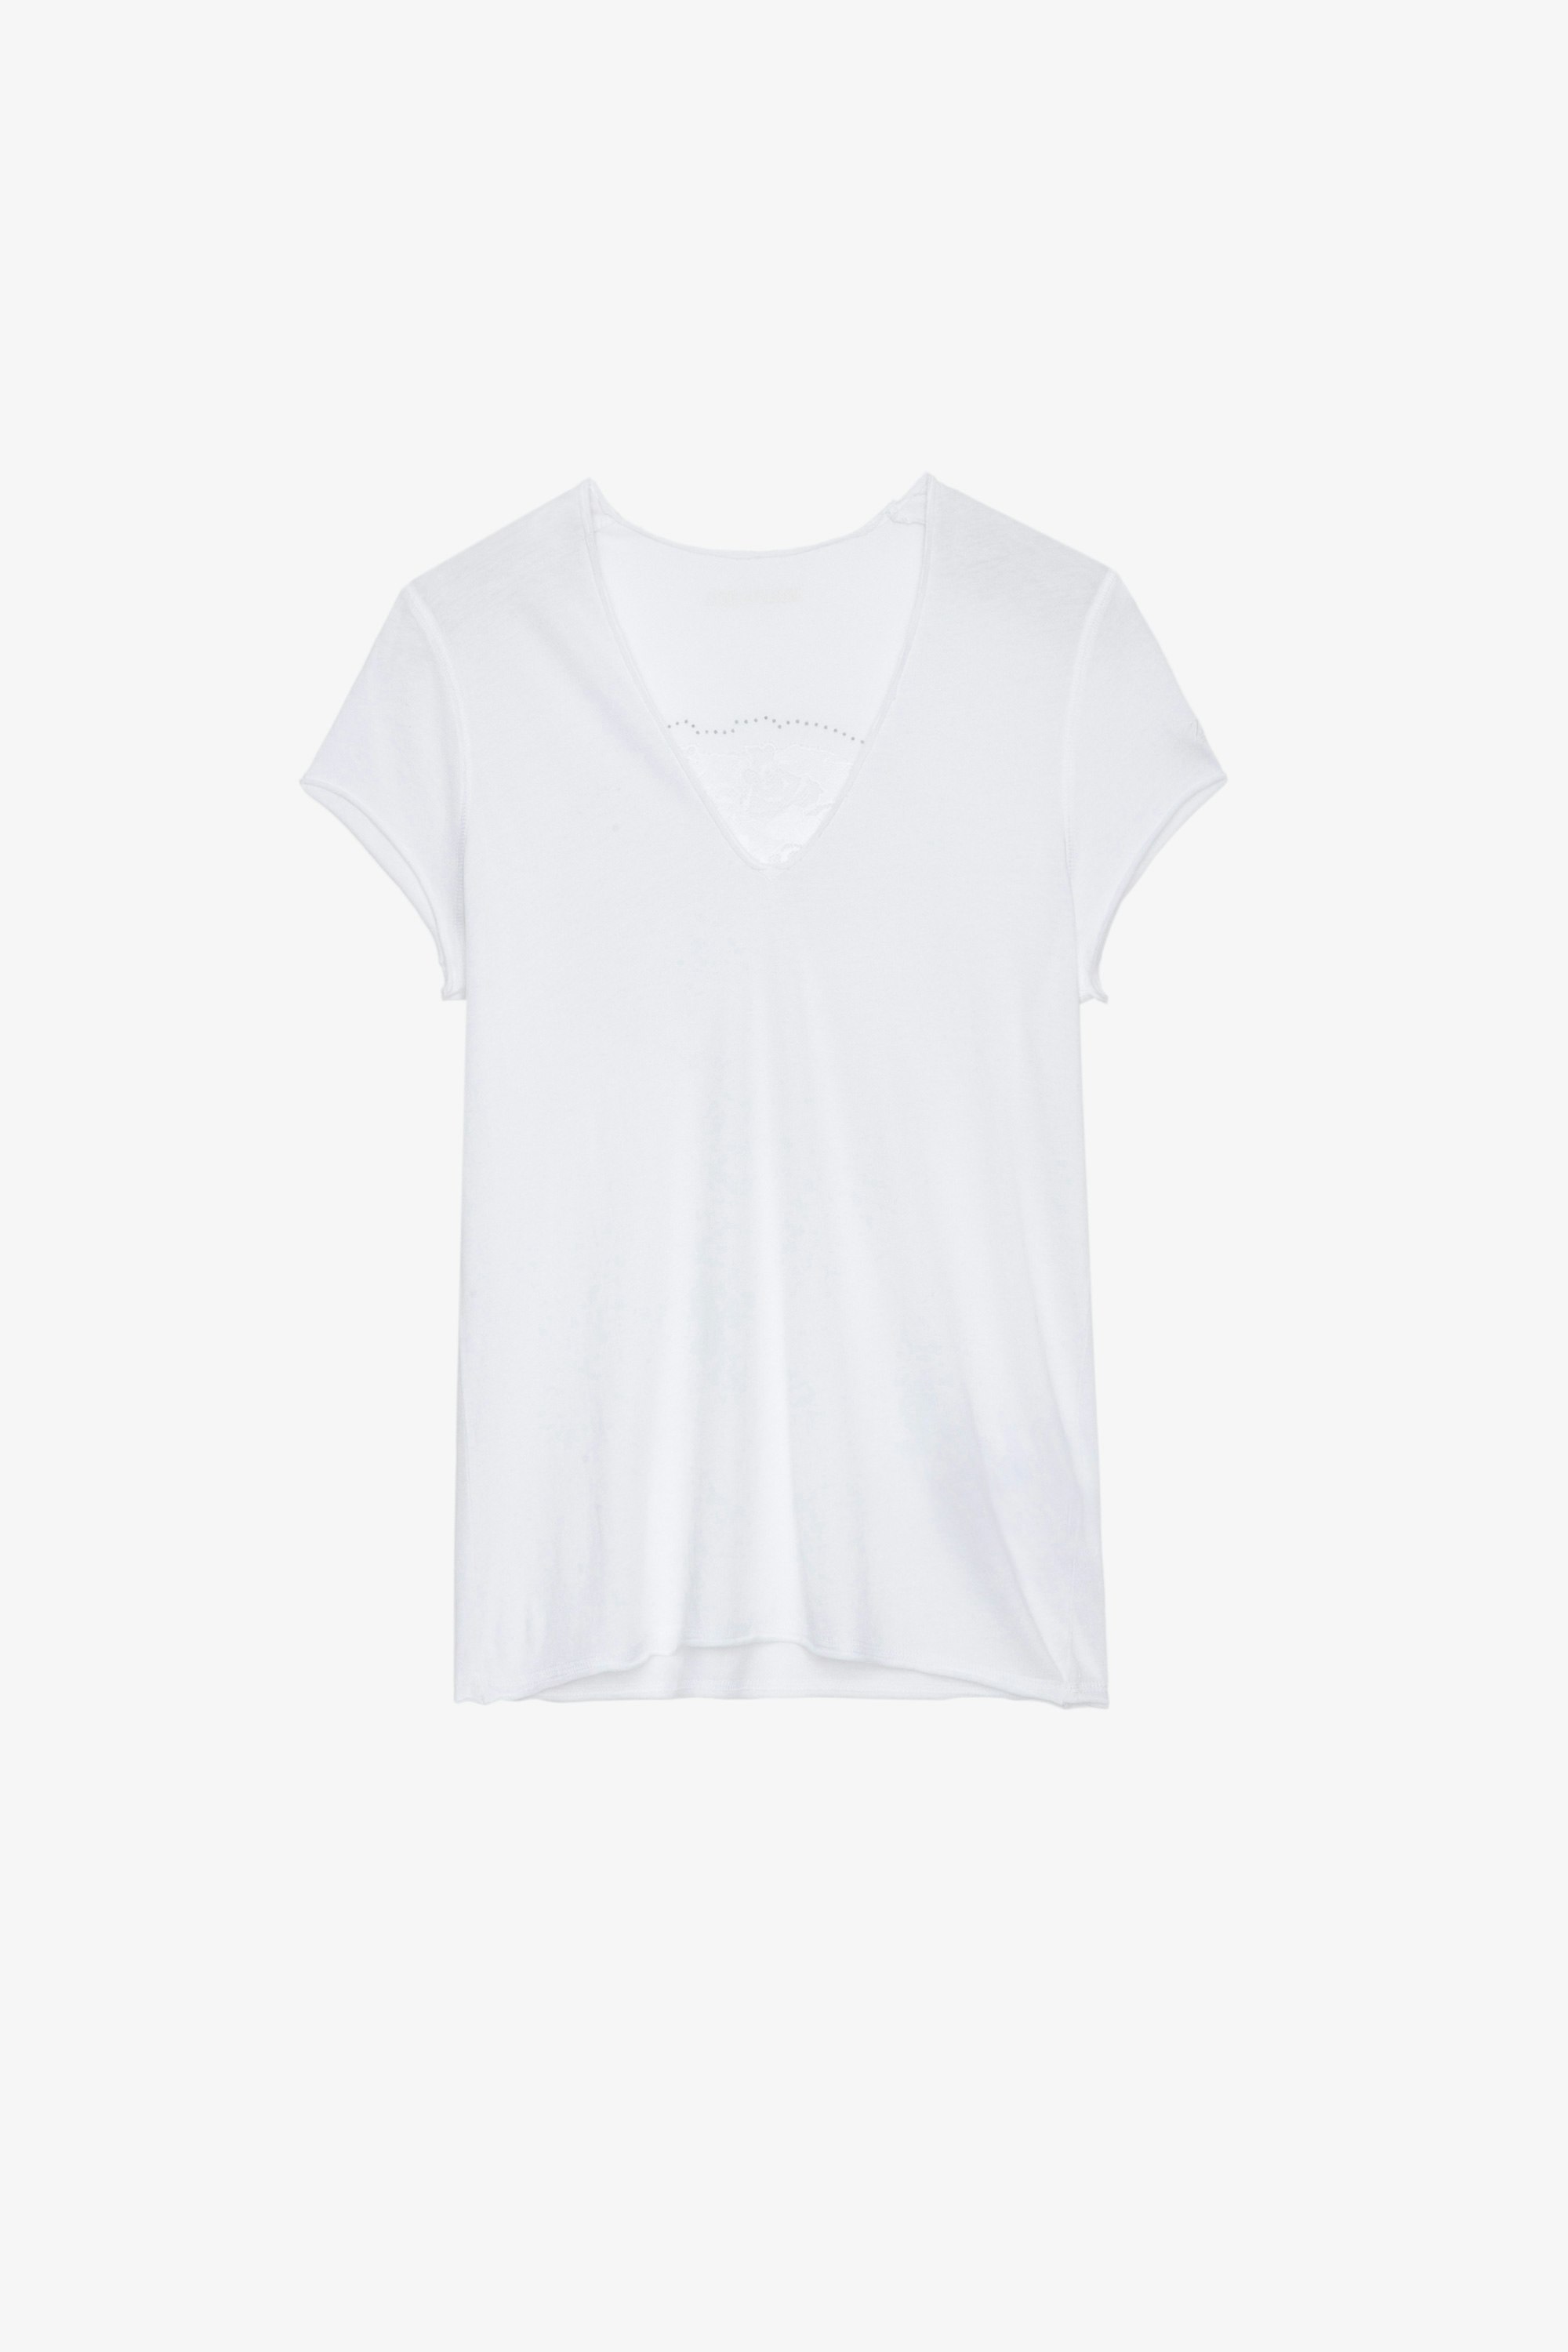 T-Shirt Story Fishnet T-shirt in cotone bianco con teschio, fiori e cristalli sulla schiena, Donna